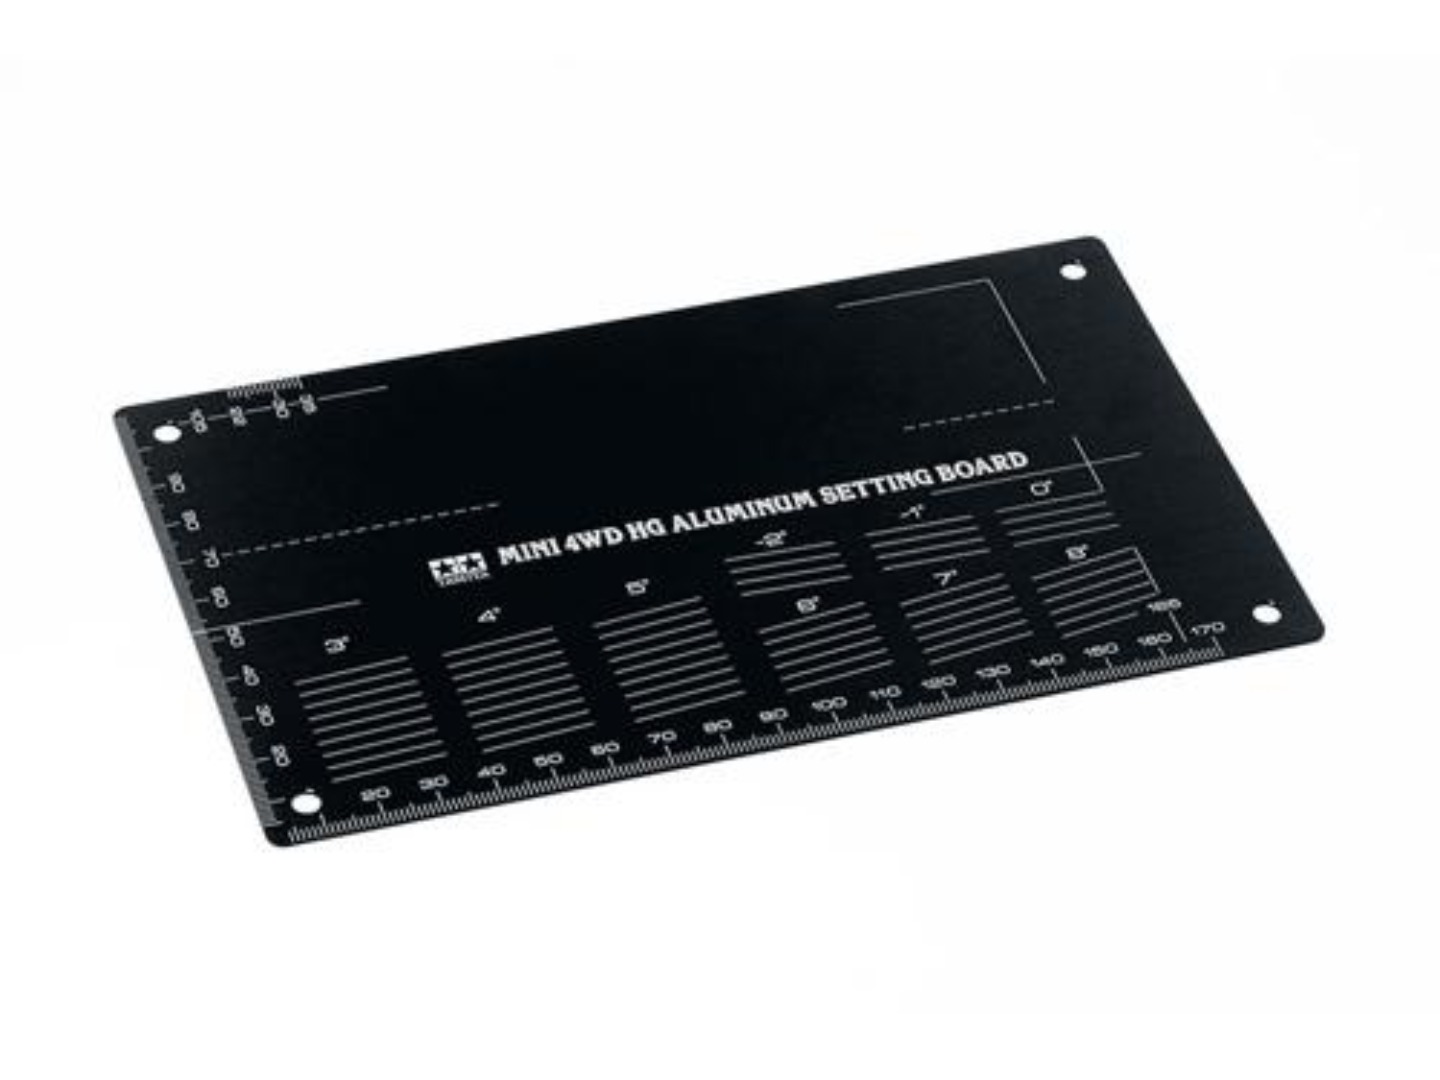 [타미야부품1] [95507] Mini4 HG Alu Setting Board Blk